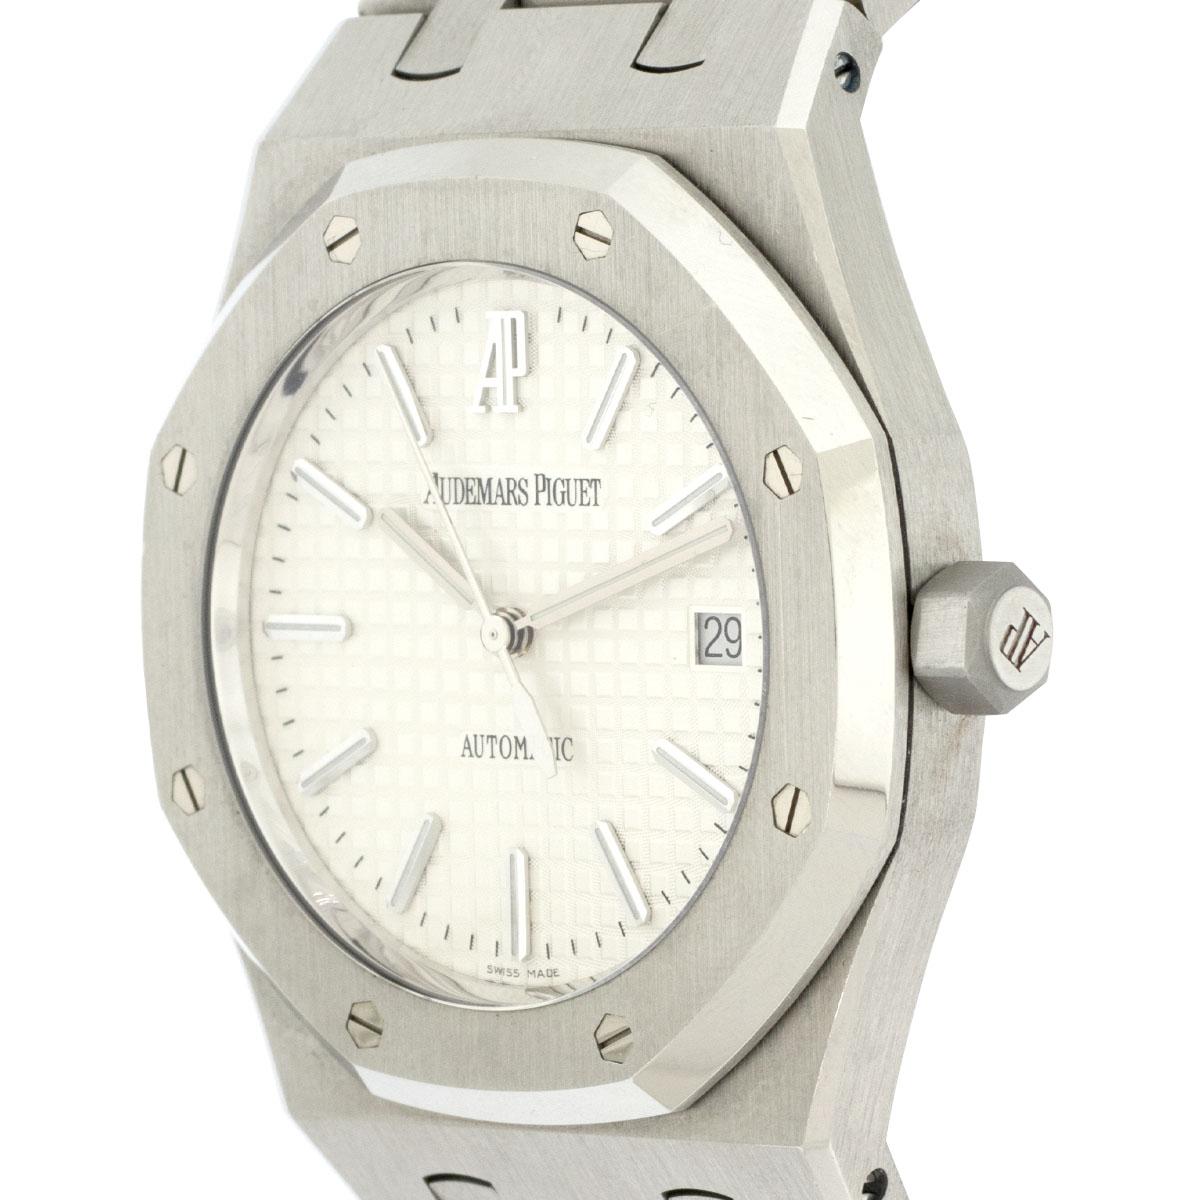 Audemars Piguet 15300 Royal Oak White Dial Watch For Sale 1